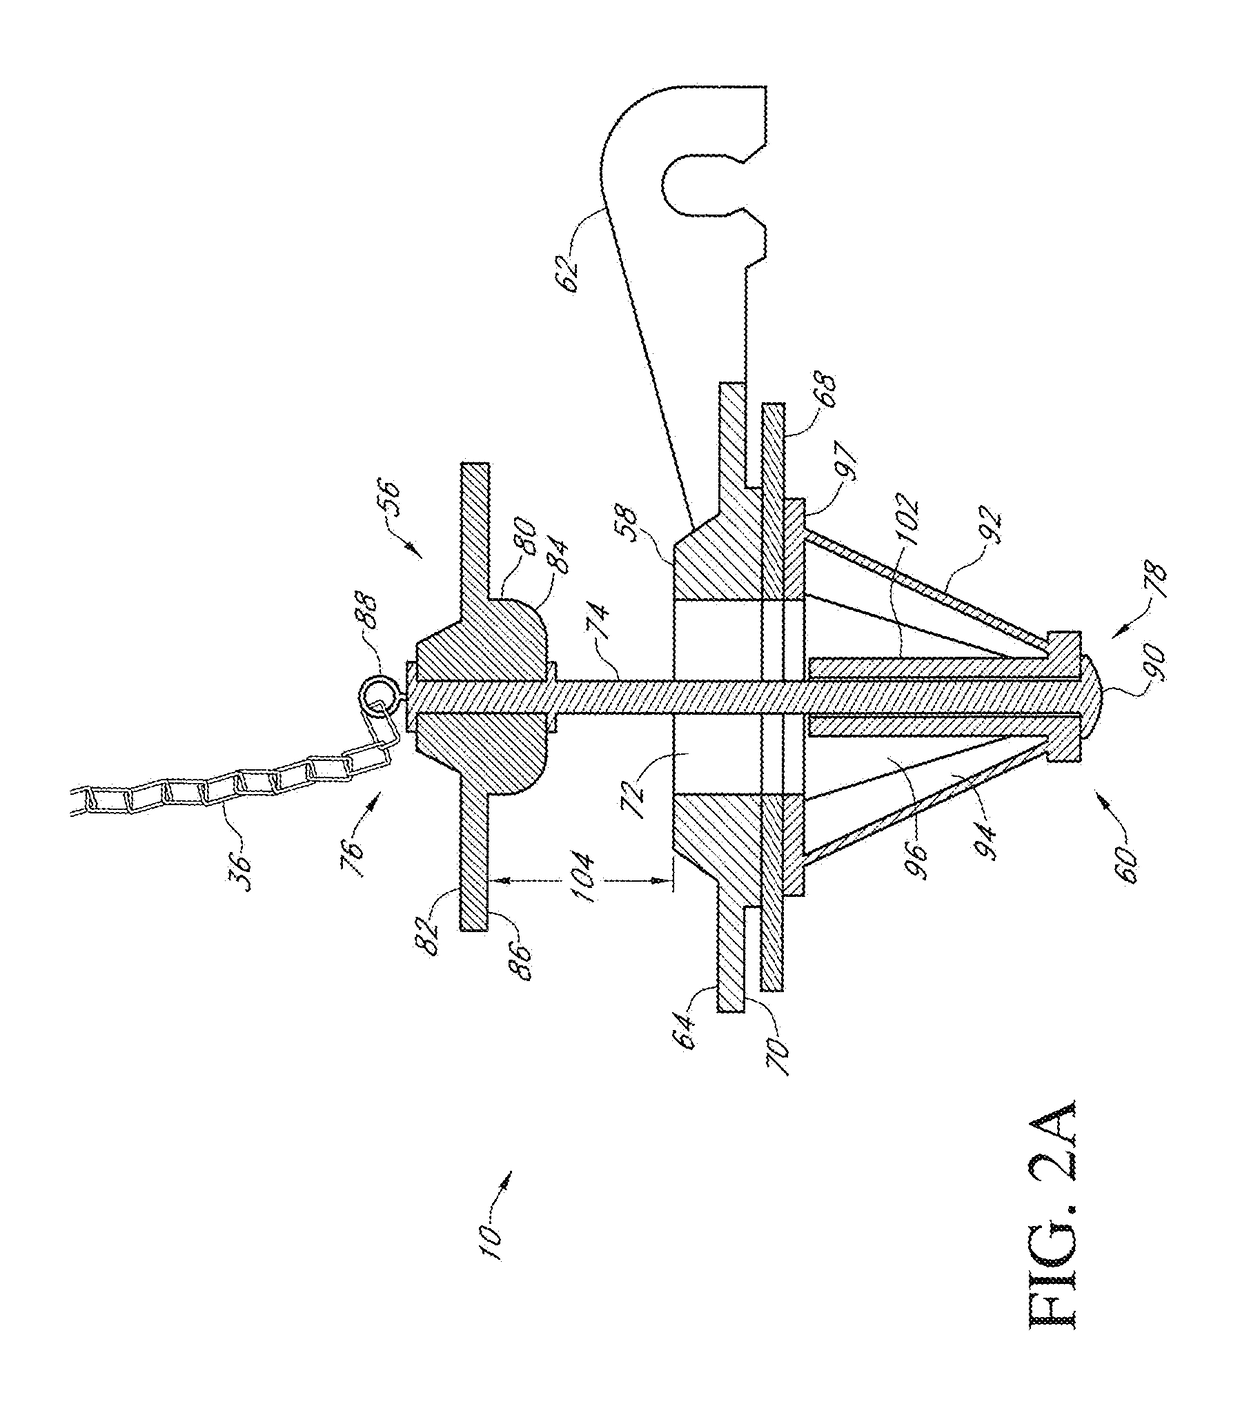 Dual-flow flapper valve assembly